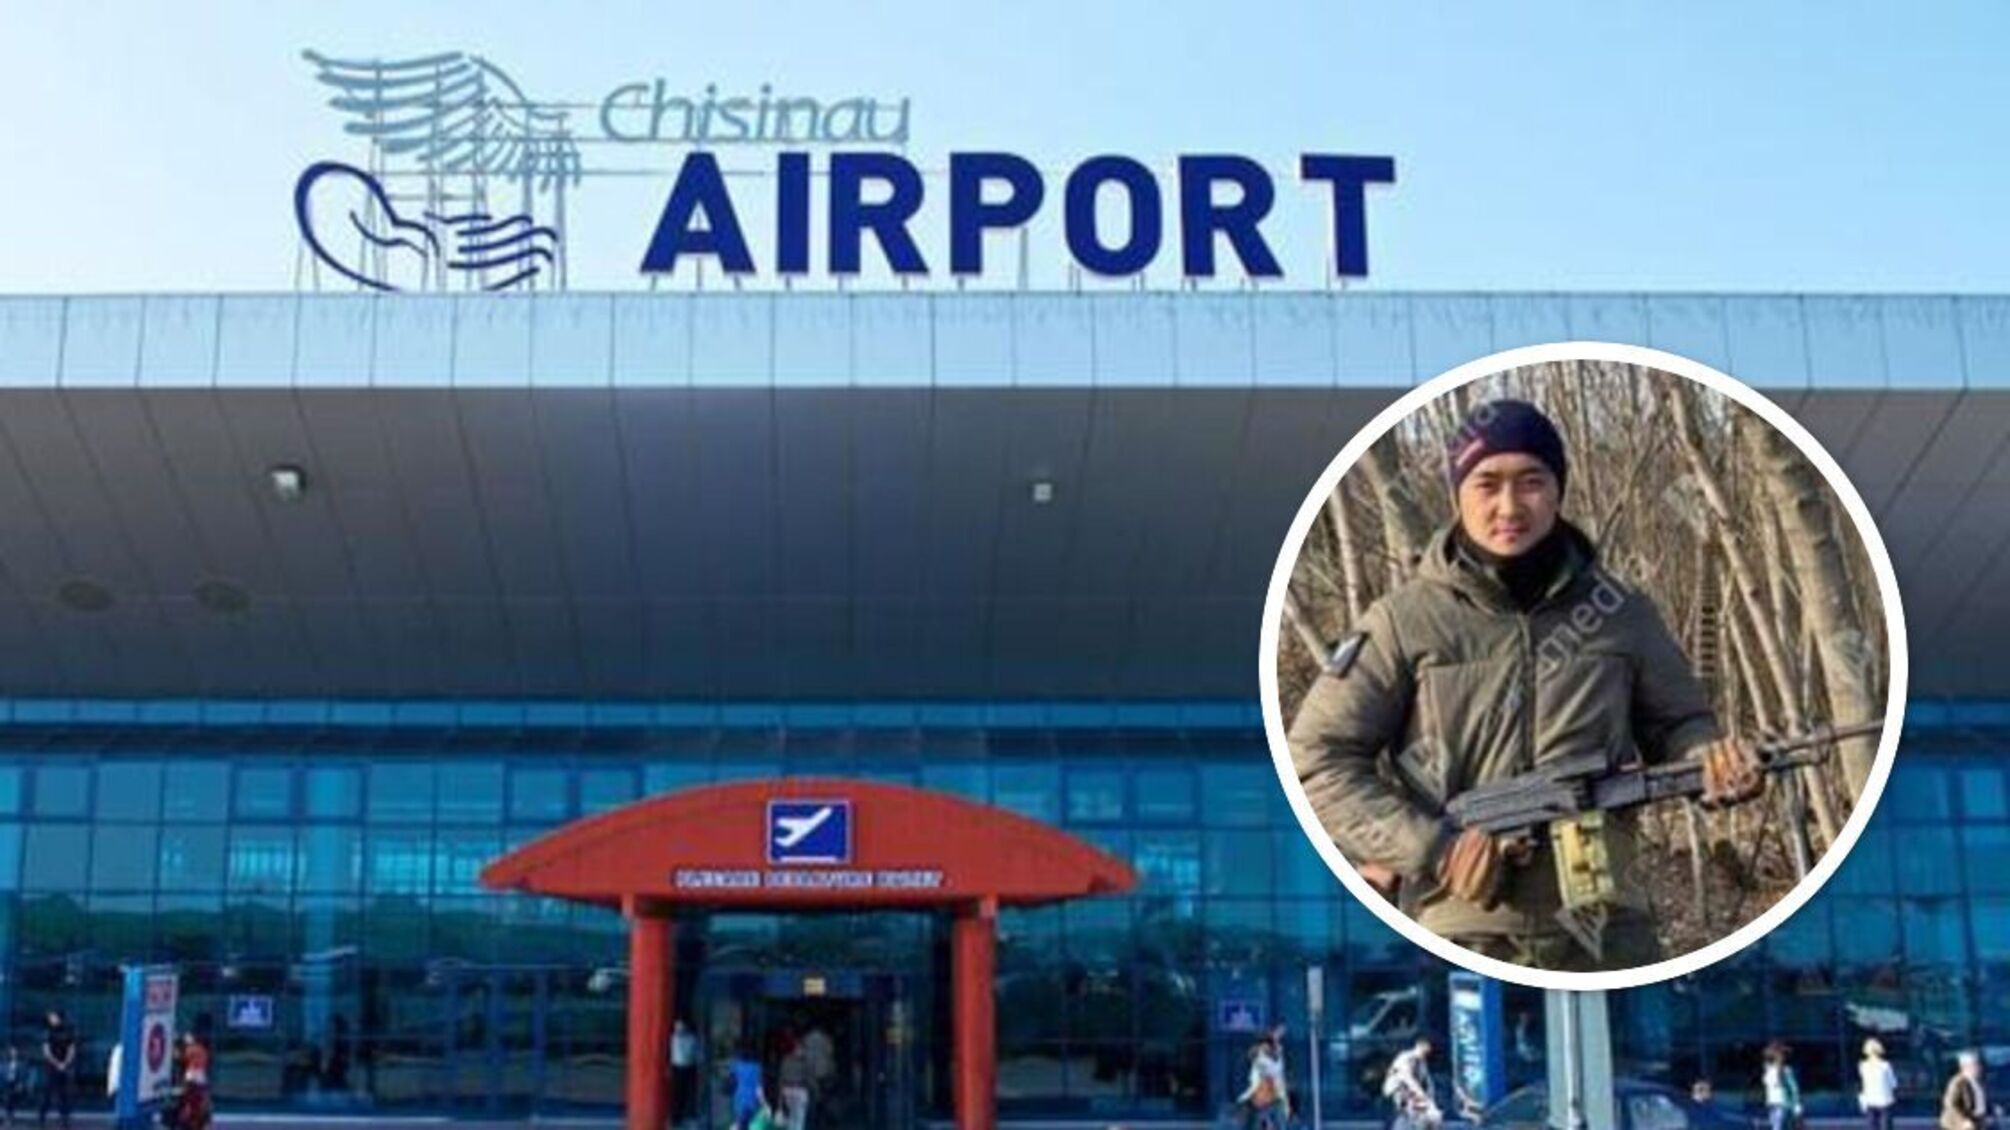 Двое убитых из-за стрельбы в аэропорту Кишинева: огонь открыл россиянин из ЧВК 'Вагнер' - СМИ